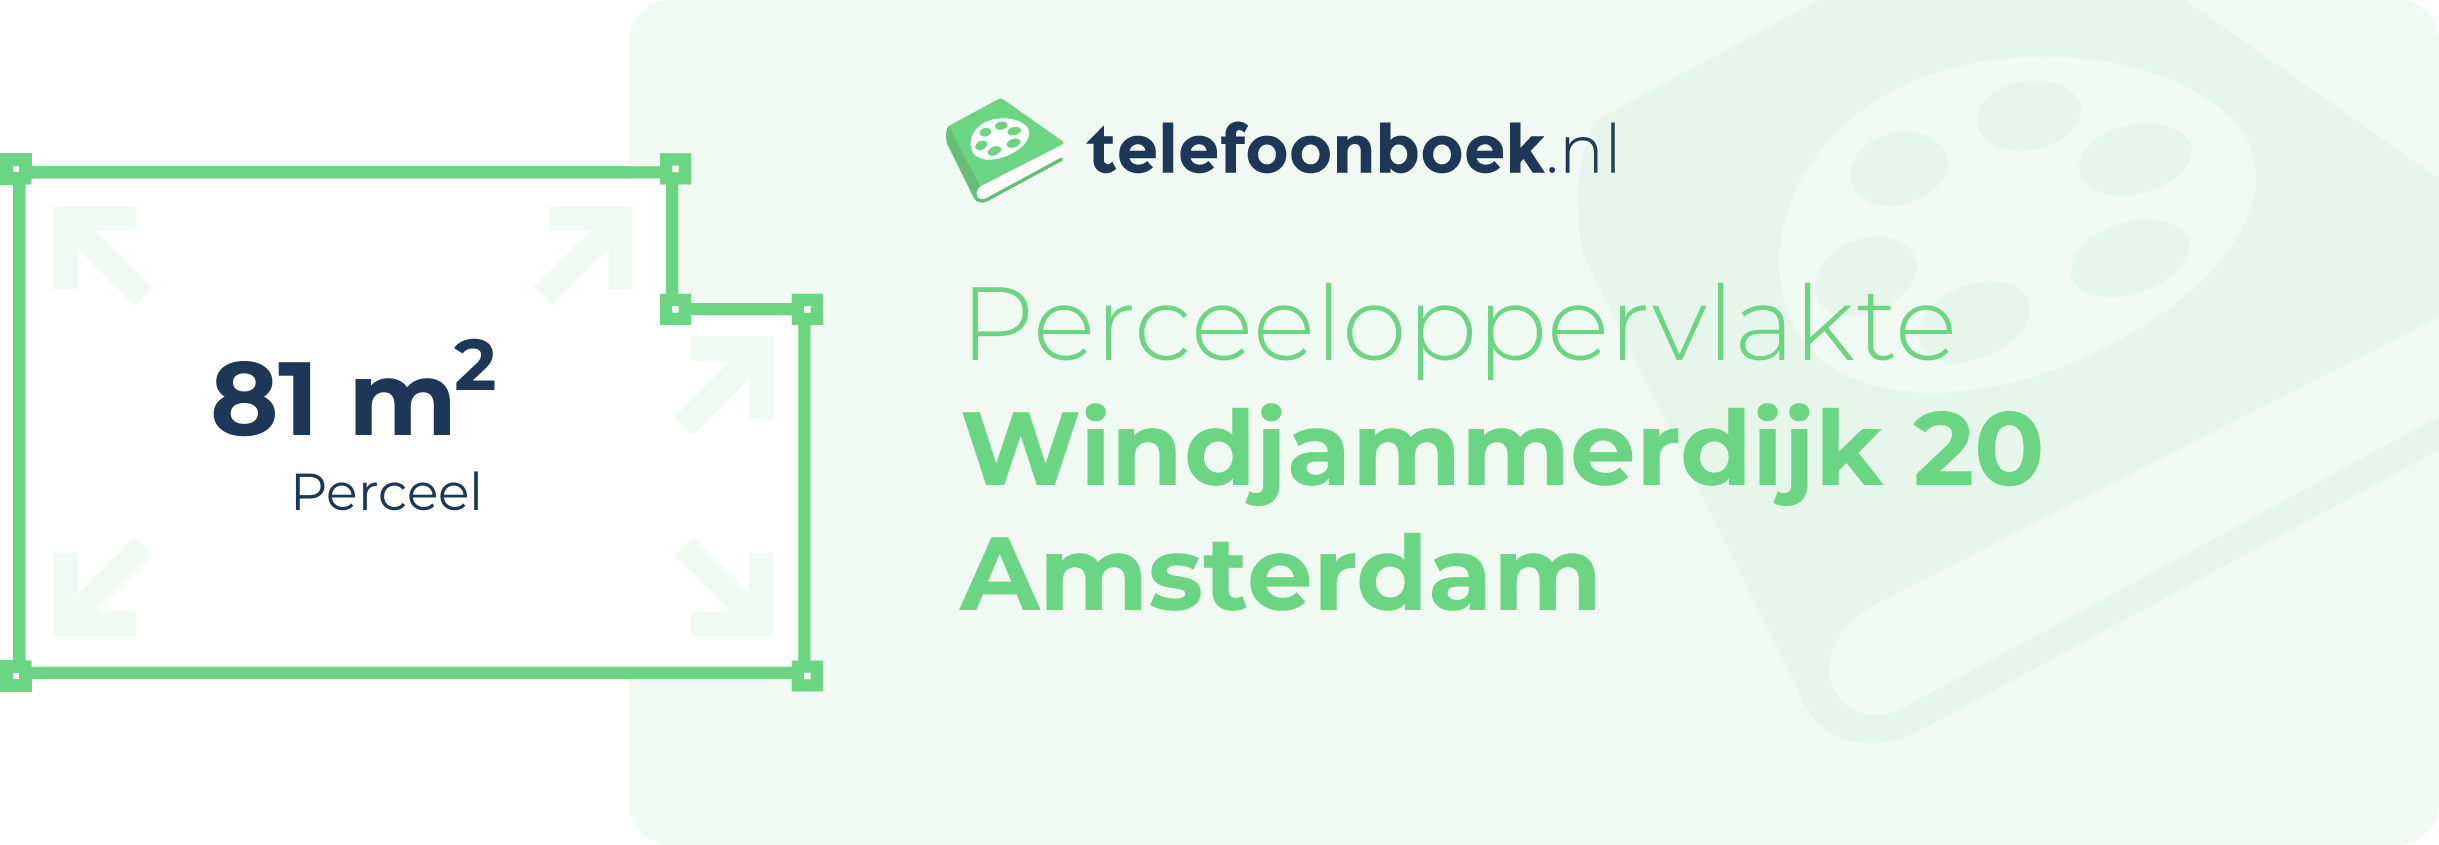 Perceeloppervlakte Windjammerdijk 20 Amsterdam